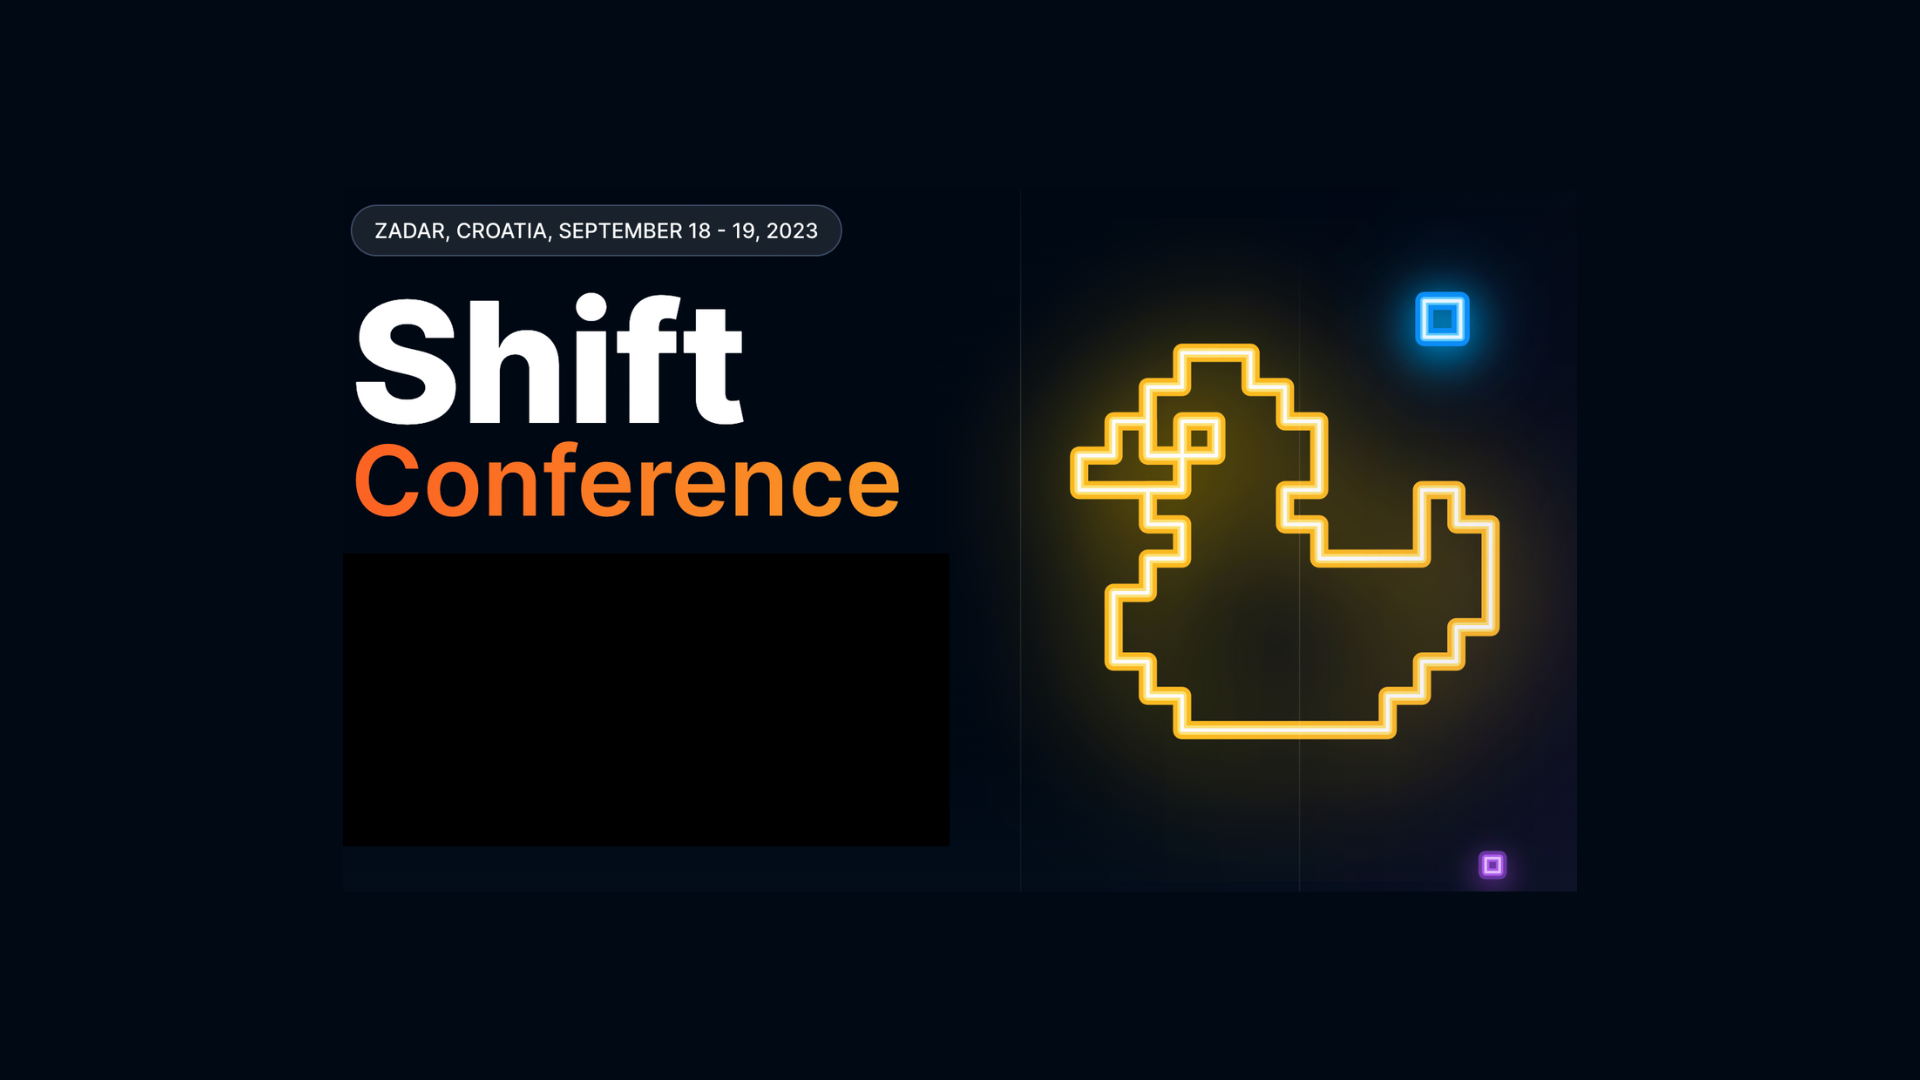 Shift conference 2023 in Zadar, Croatia